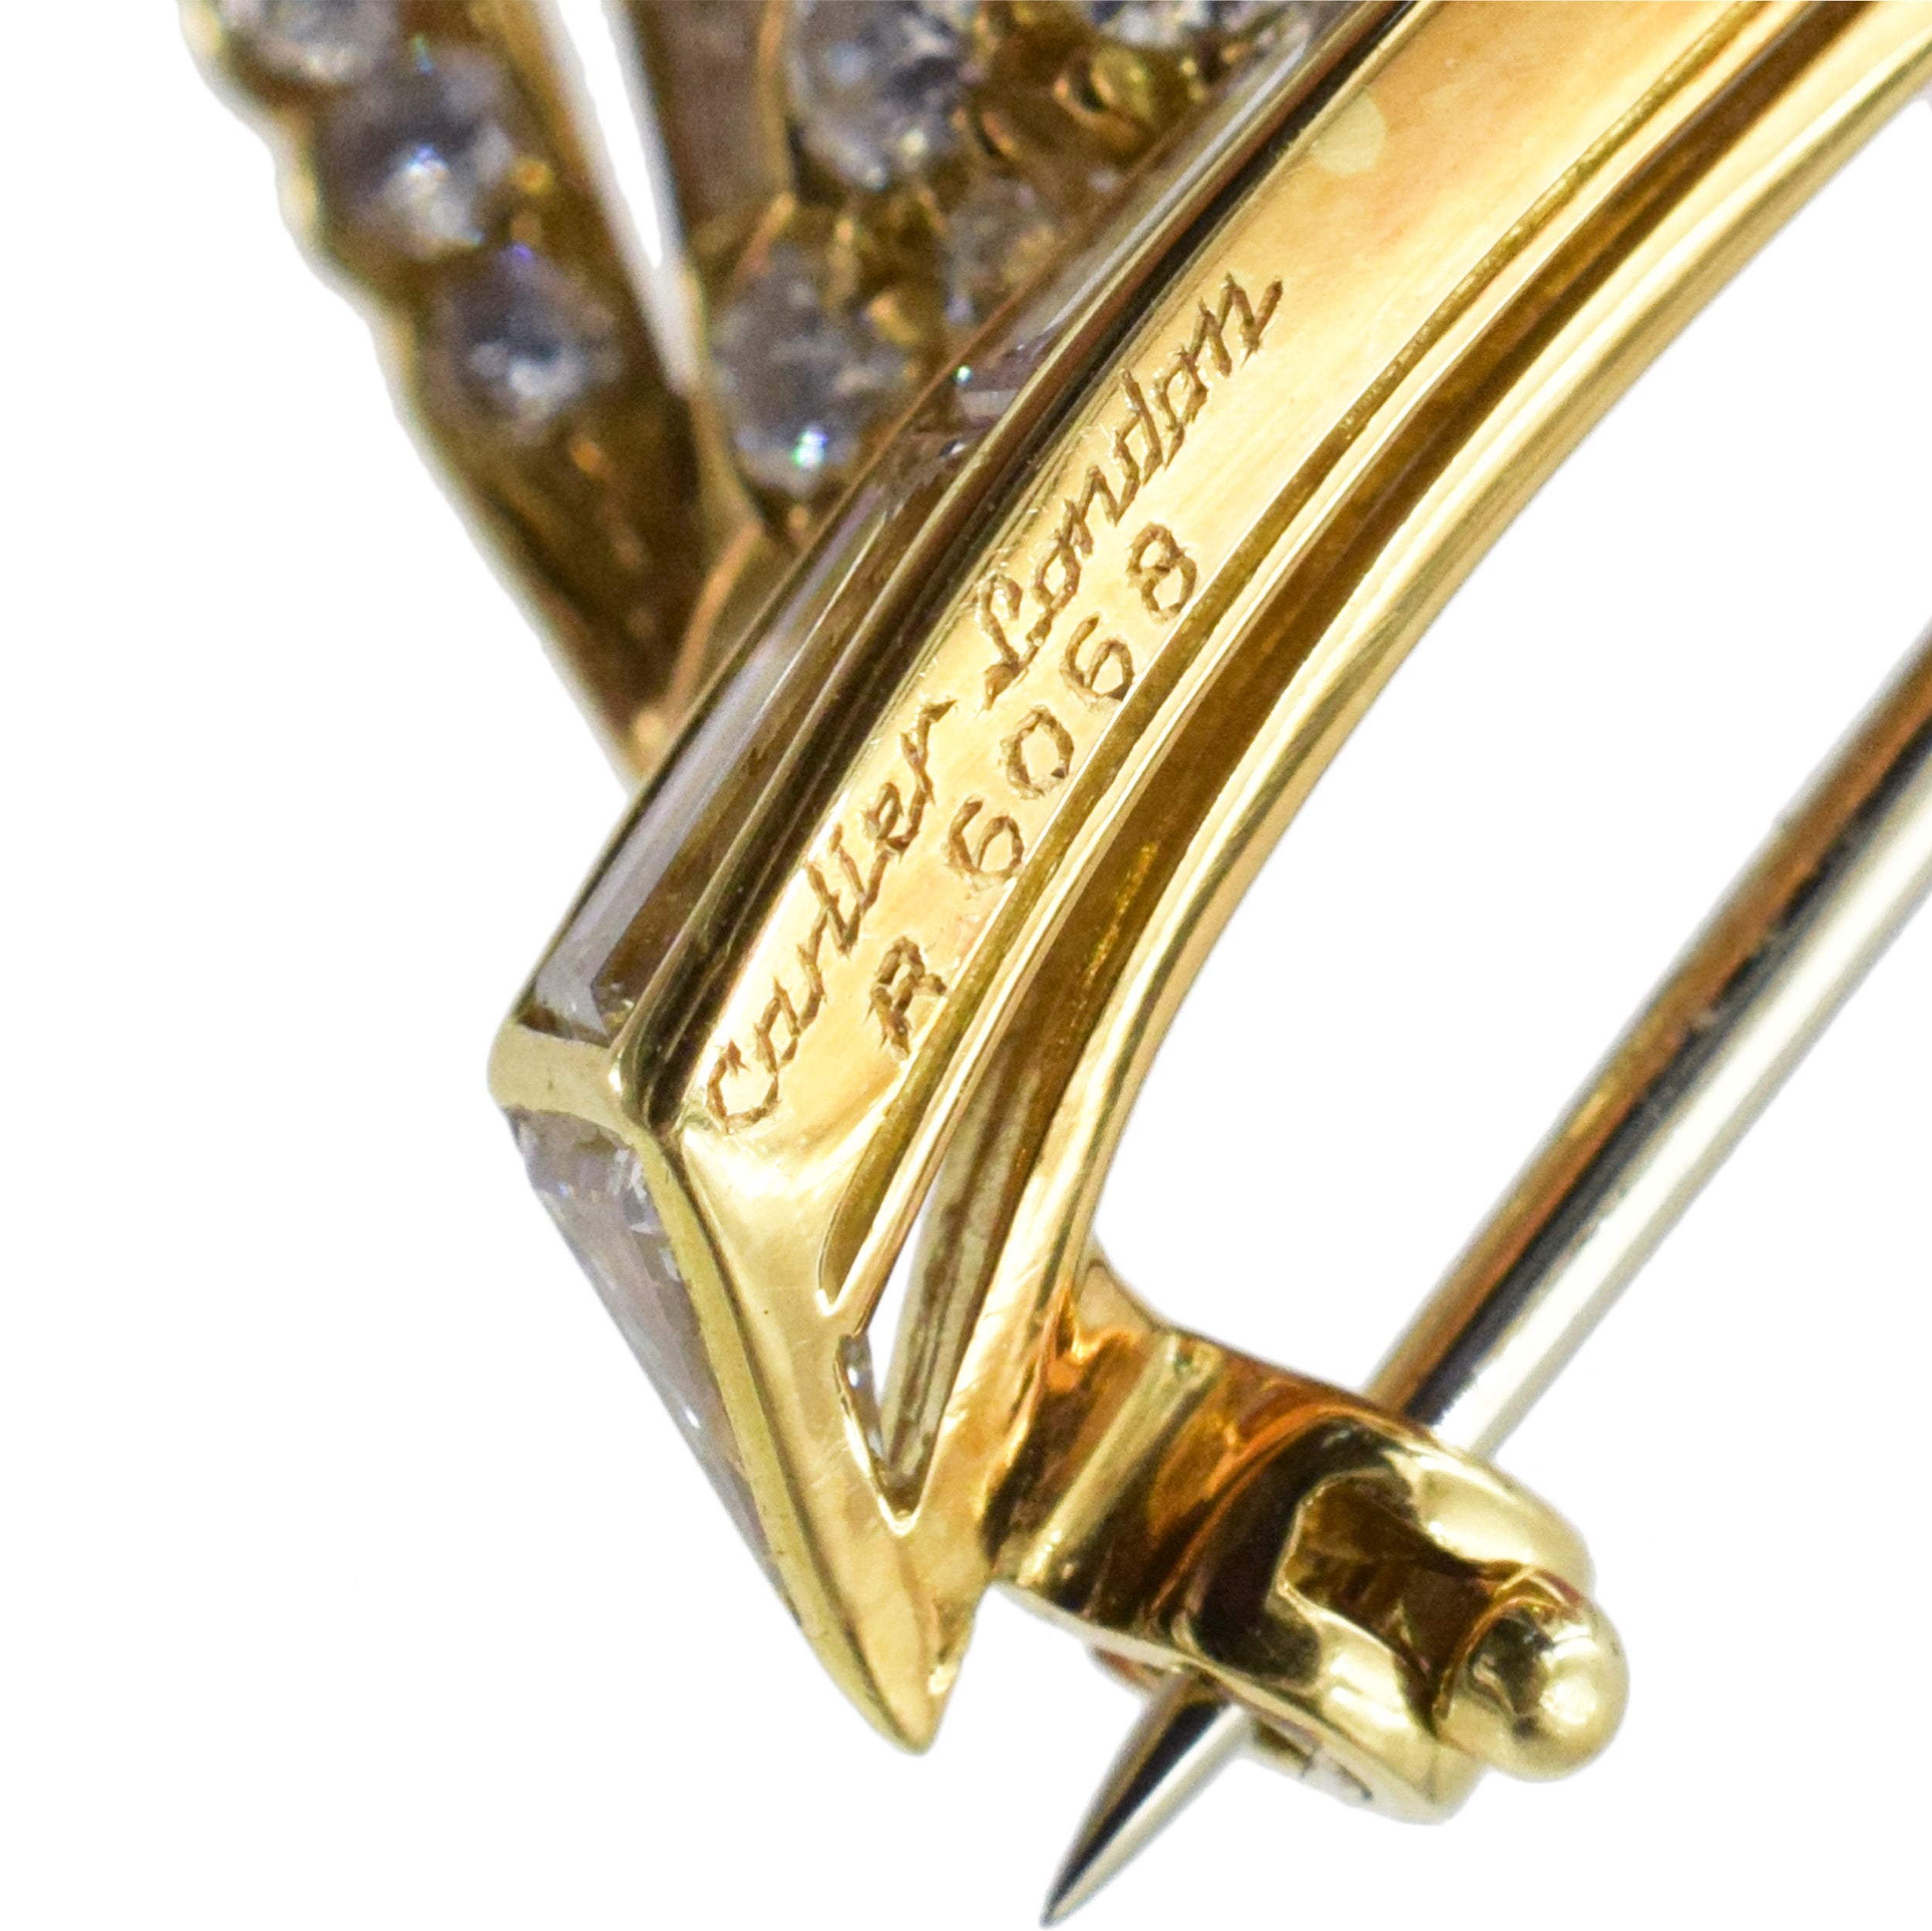 Cartier diamond flower brooch in 18k yellow gold.